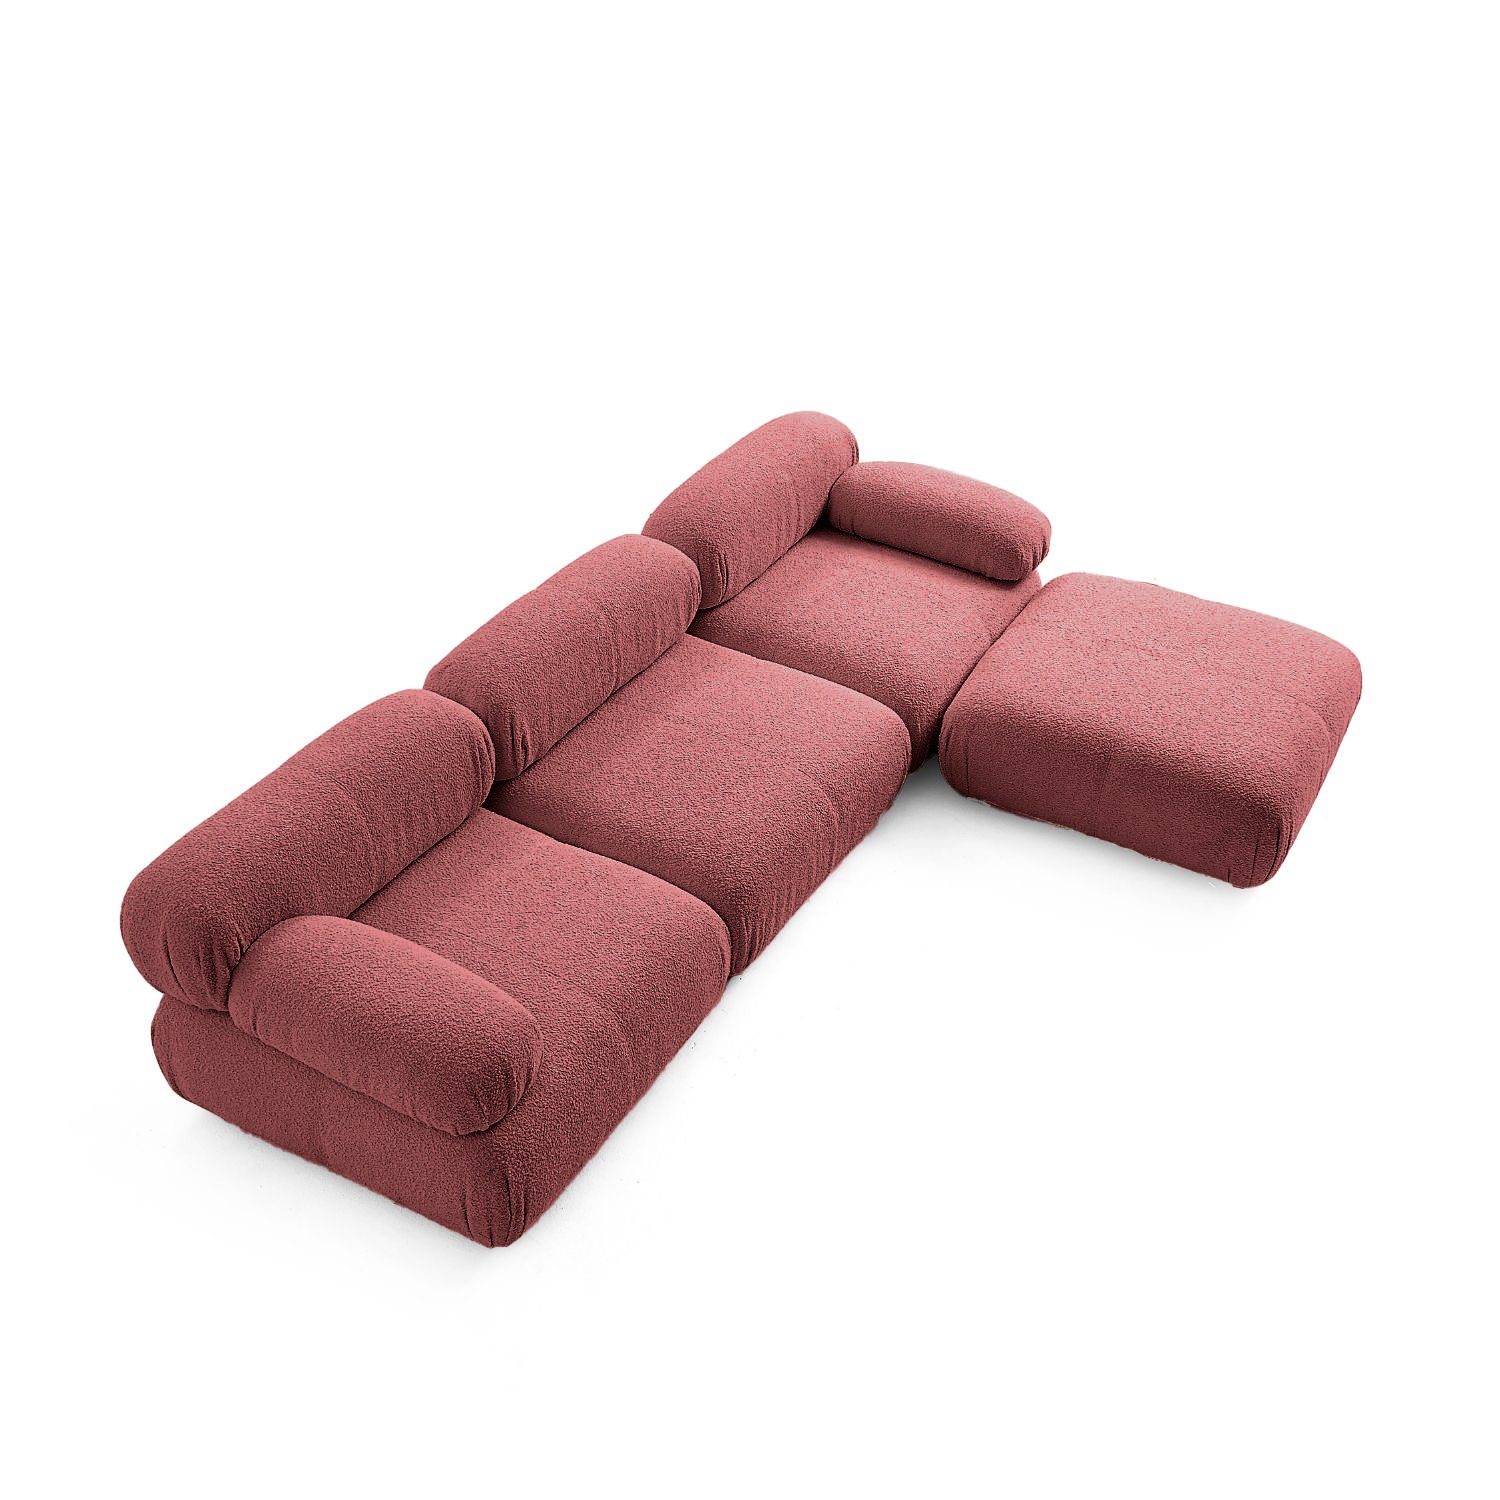 Aufbau aus Rotbraun-Lieferung und im Komfortschaum Generation Touch Sofa enthalten! Sitzmöbel Preis neueste me Knuffiges